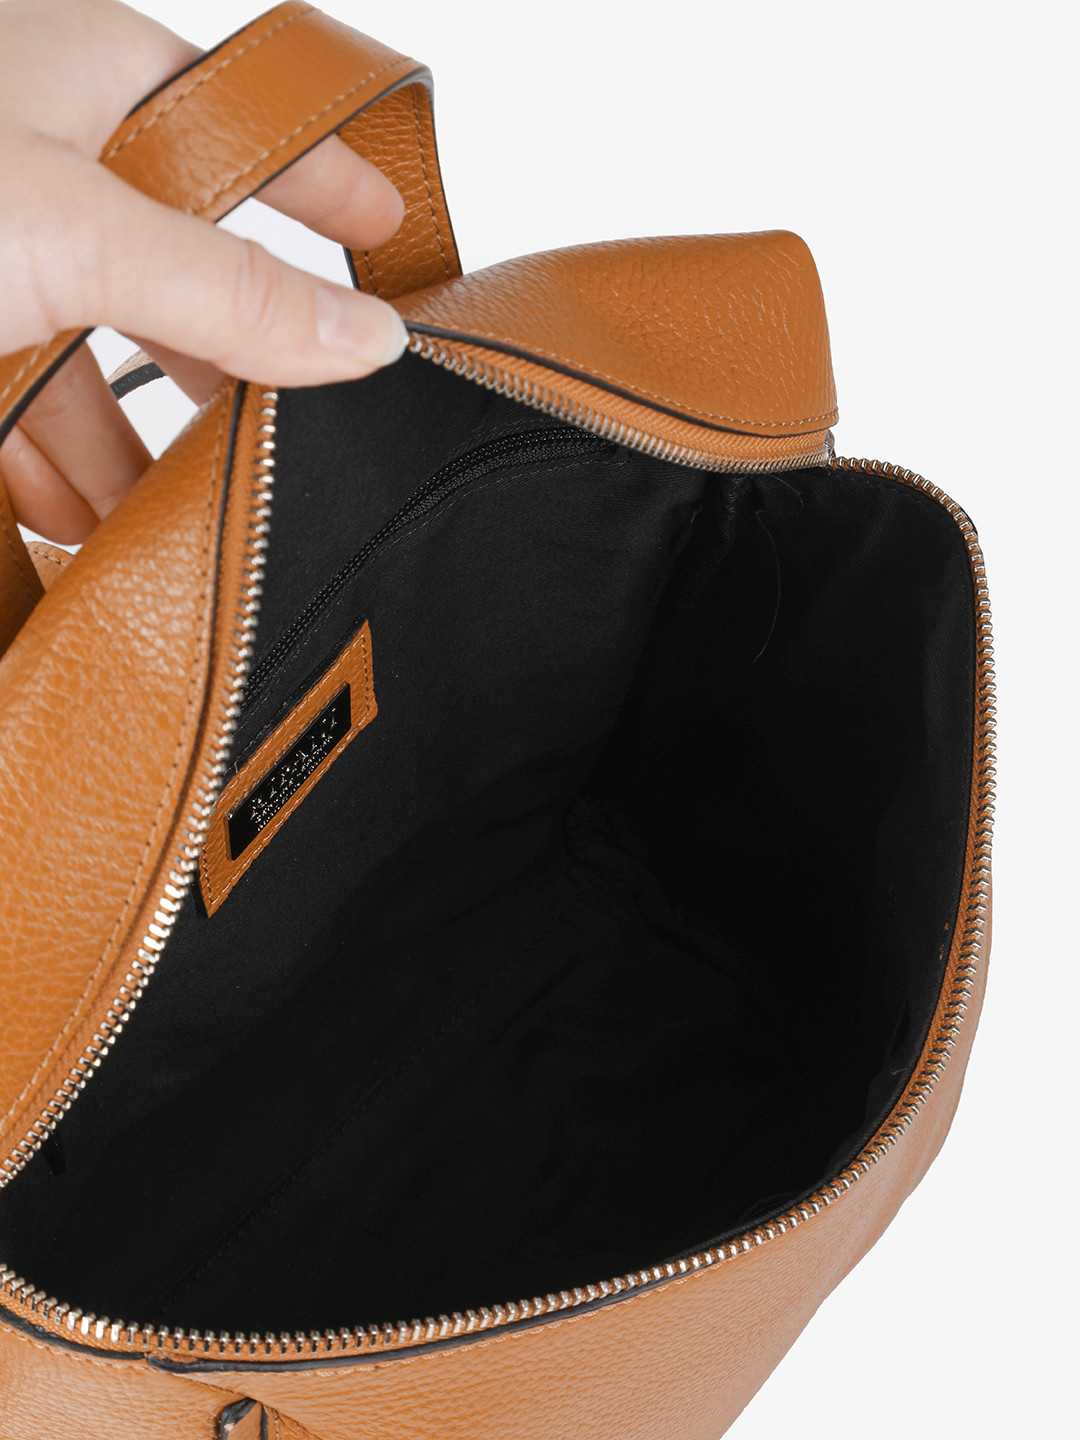 Купить рюкзак женский кожаный | Натуральная кожа - anyBag